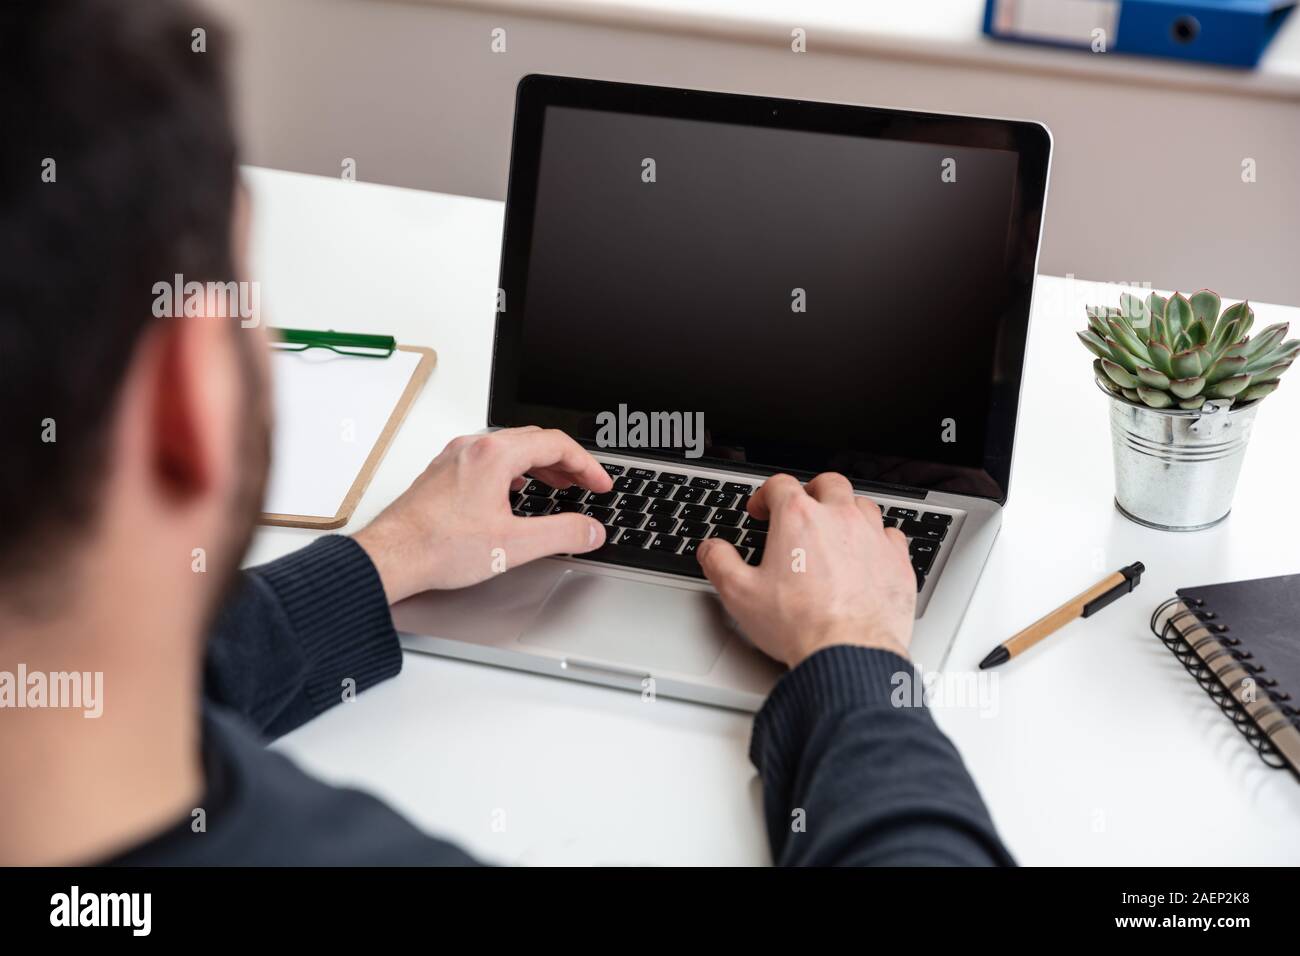 Bildschirm mockup. Mann bei der Arbeit mit einem schwarzen, leeren Bildschirm Laptop auf Holz Schreibtisch, Büro Background, kopieren Raum Stockfoto